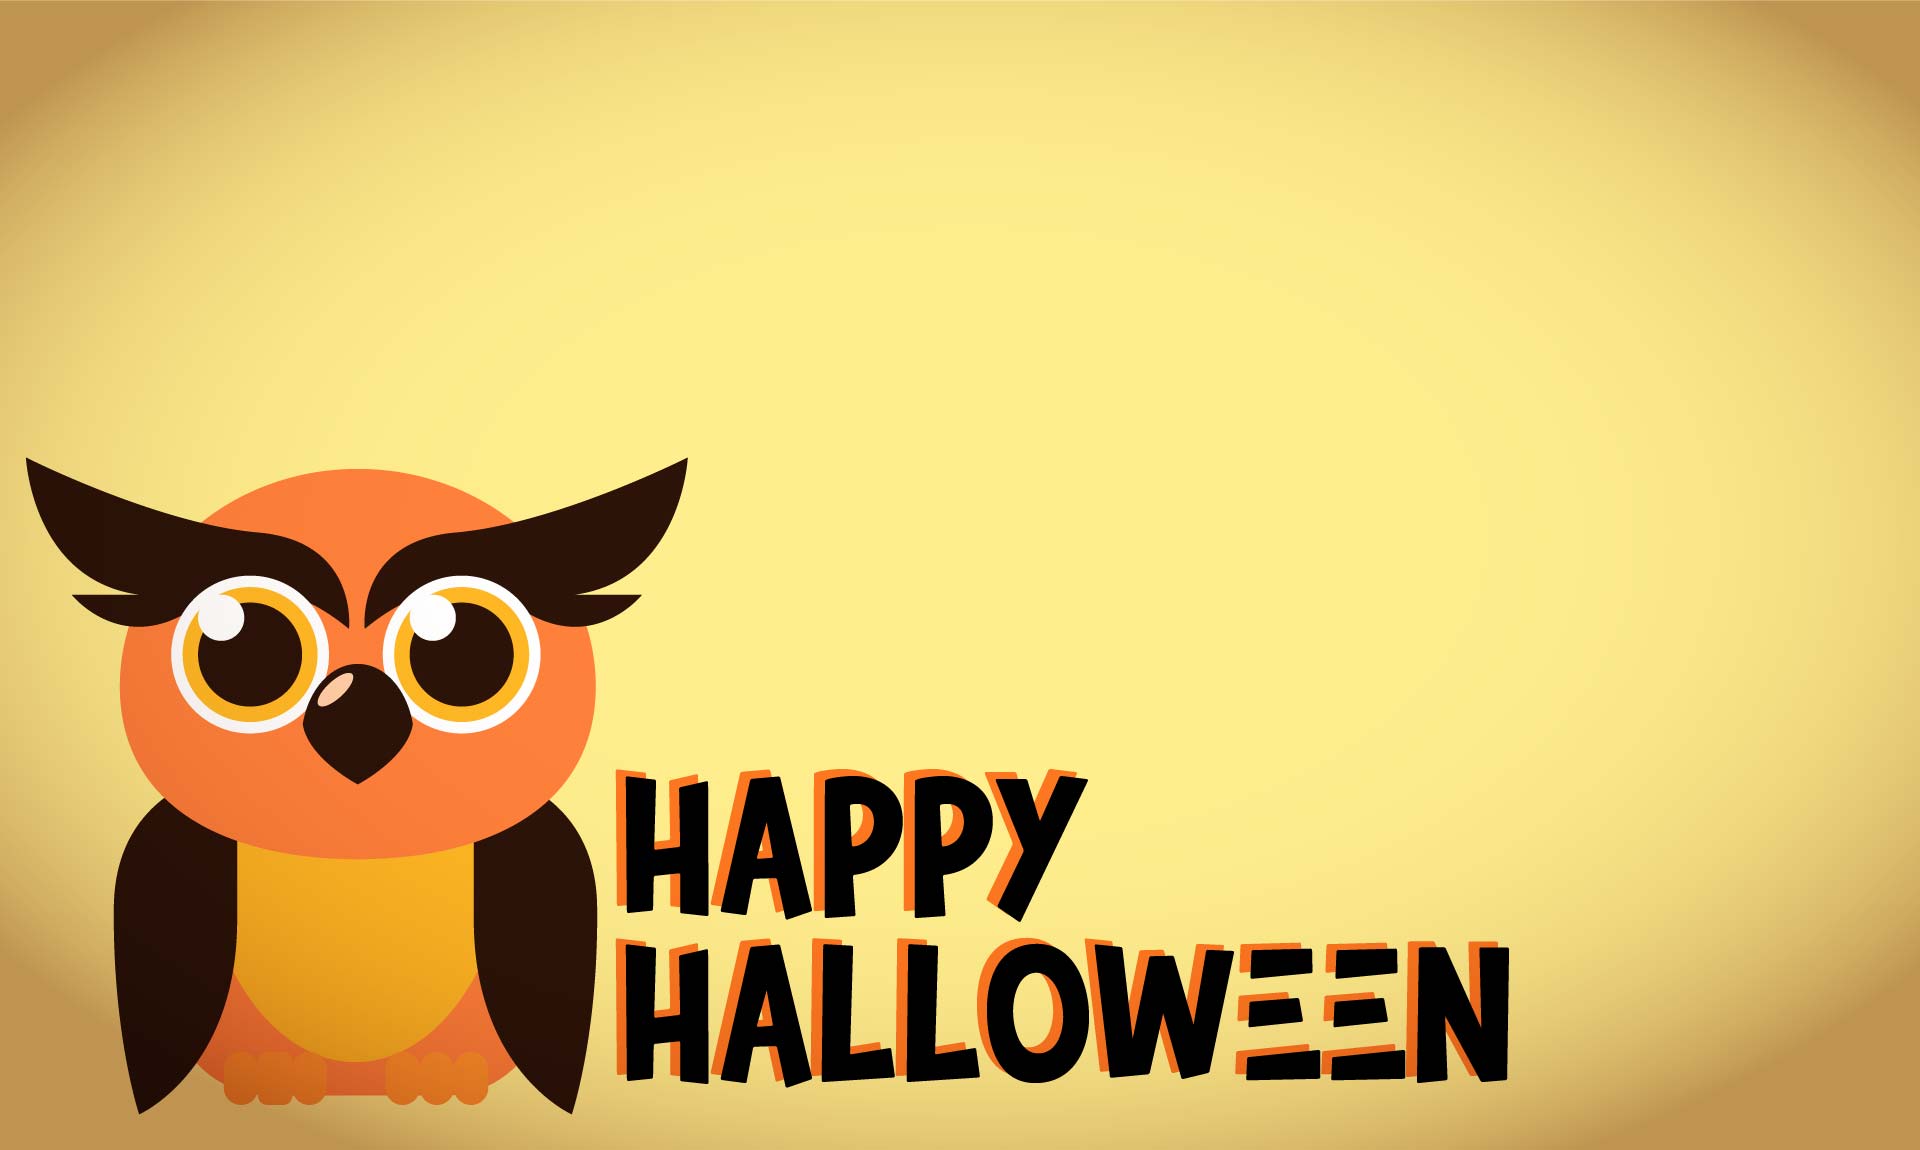 15 Best Free Printable Vintage Halloween Owl PDF for Free at Printablee